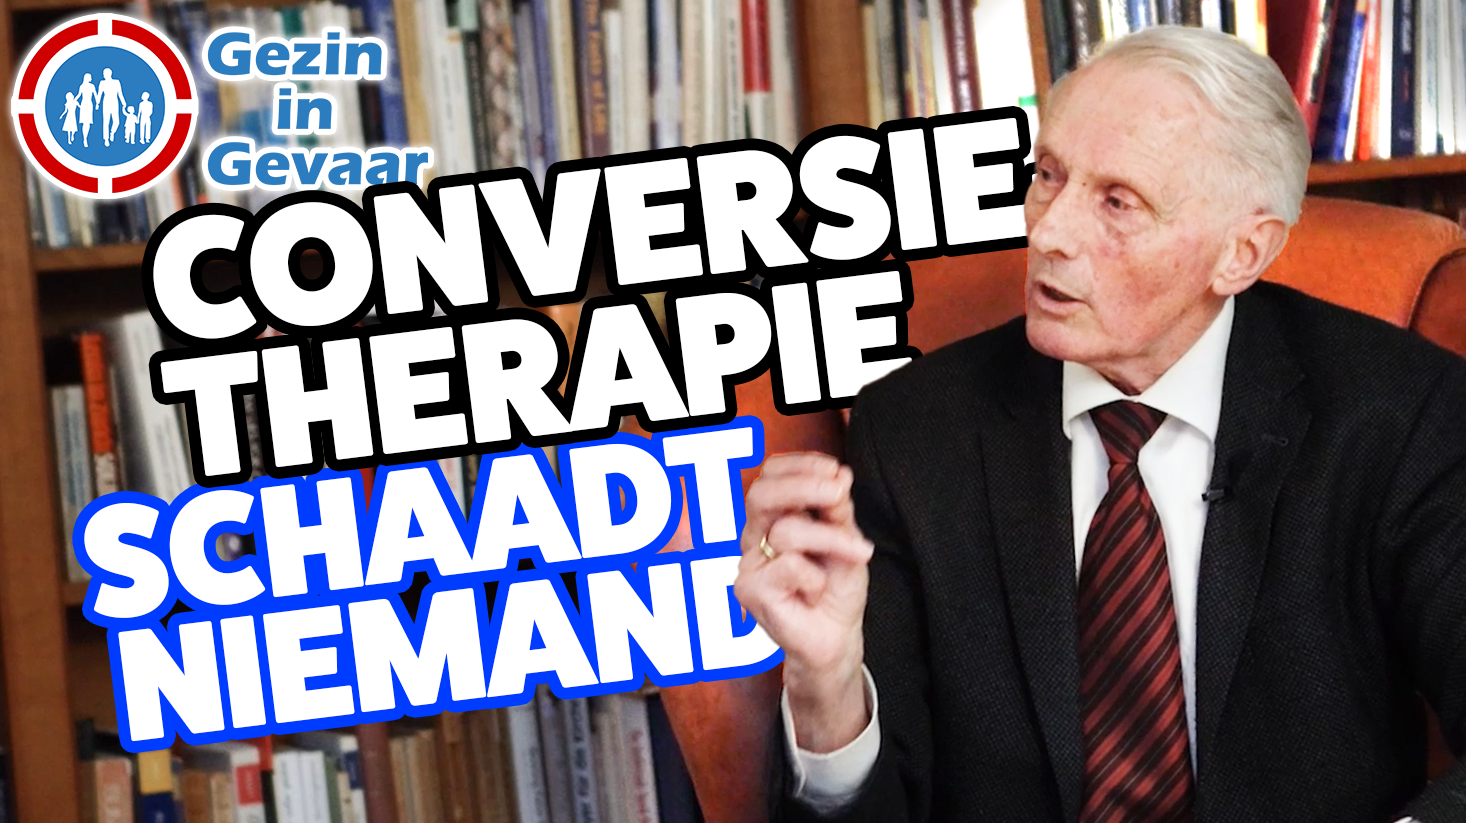 Psycholoog Gerard van den Aardweg: ‘Conversietherapie geeft hoop aan homoseksuelen’